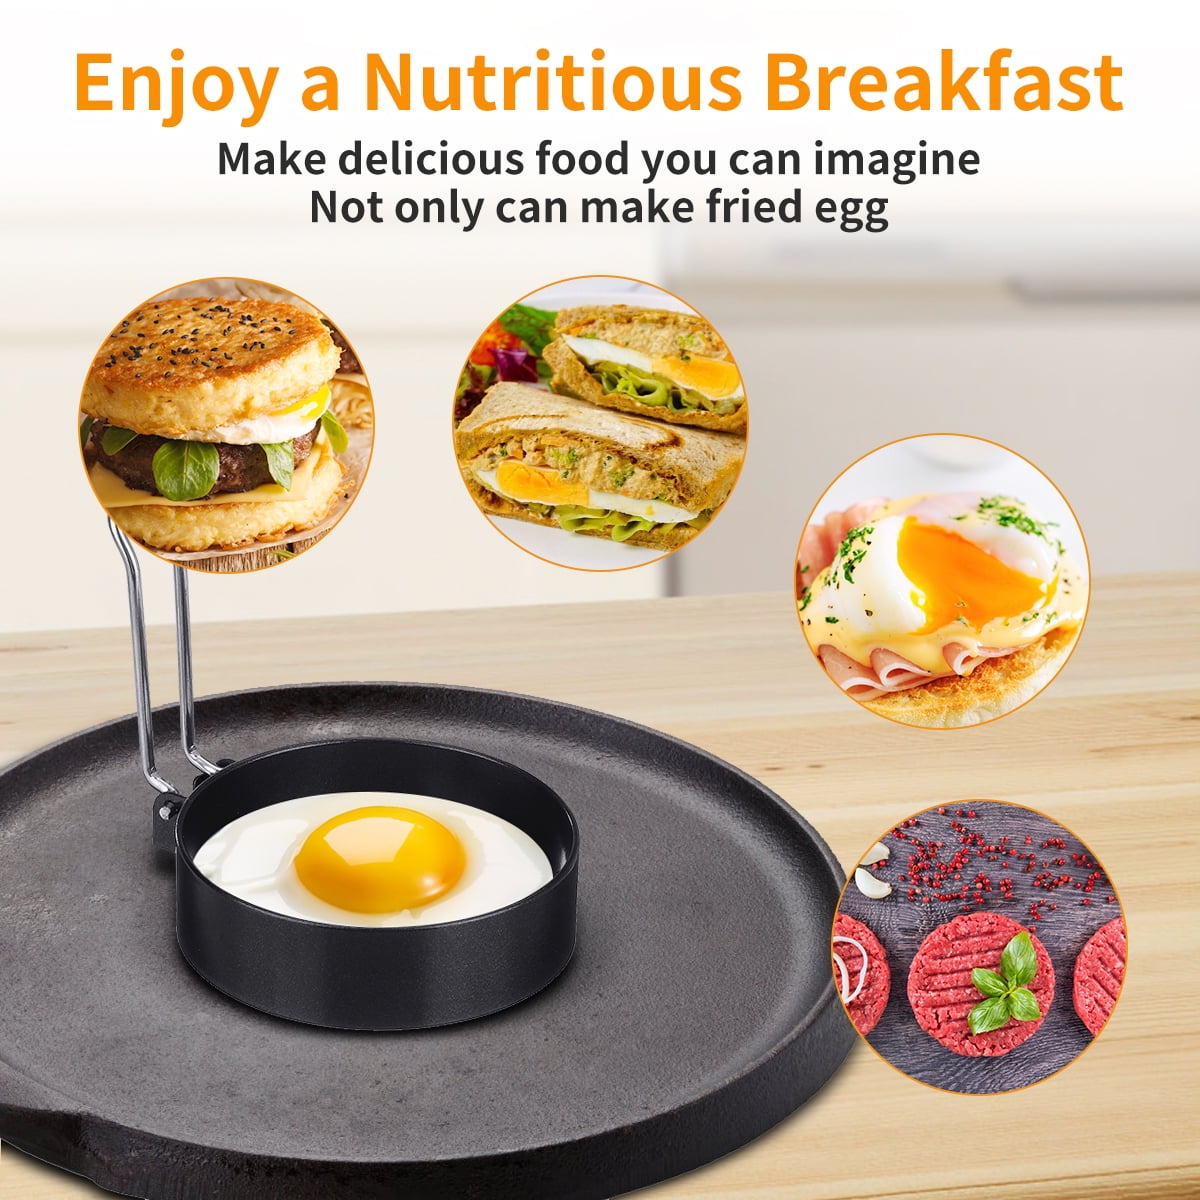 Brottfor Nonstick Pancake Cooking Tool Egg Ring Maker Cheese Egg Cooker Pan Flip Egg Mold, Size: 40